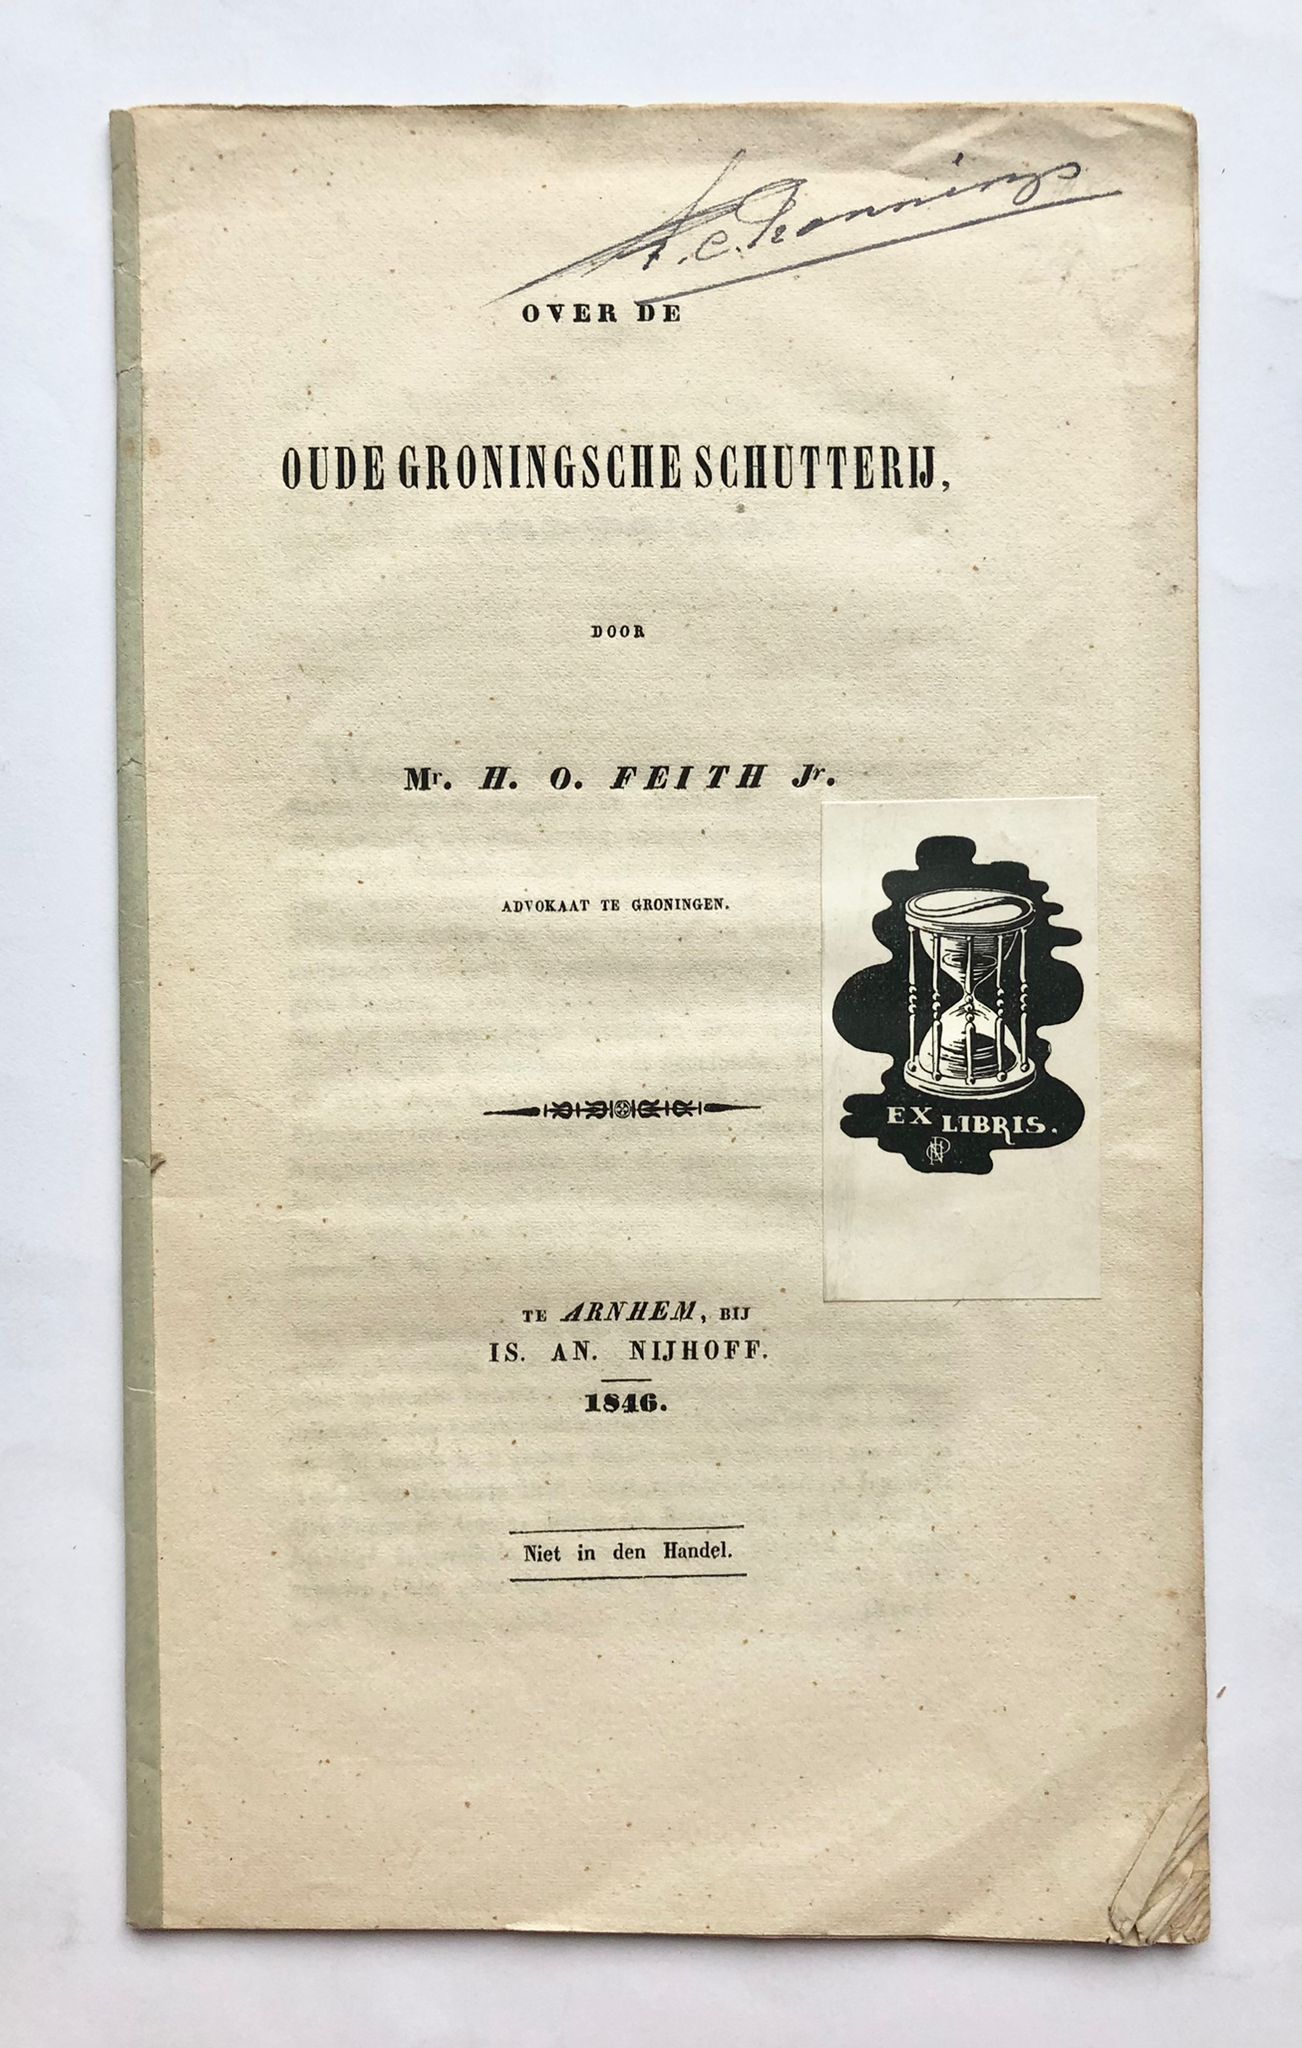 [Groningen] Over de oude Groningsche schutterij, door Mr. H. O. Feith Jr. Advokaat te Groningen, Is. An. Nijhoff, Te Arnhem, 1846, 30 pp.